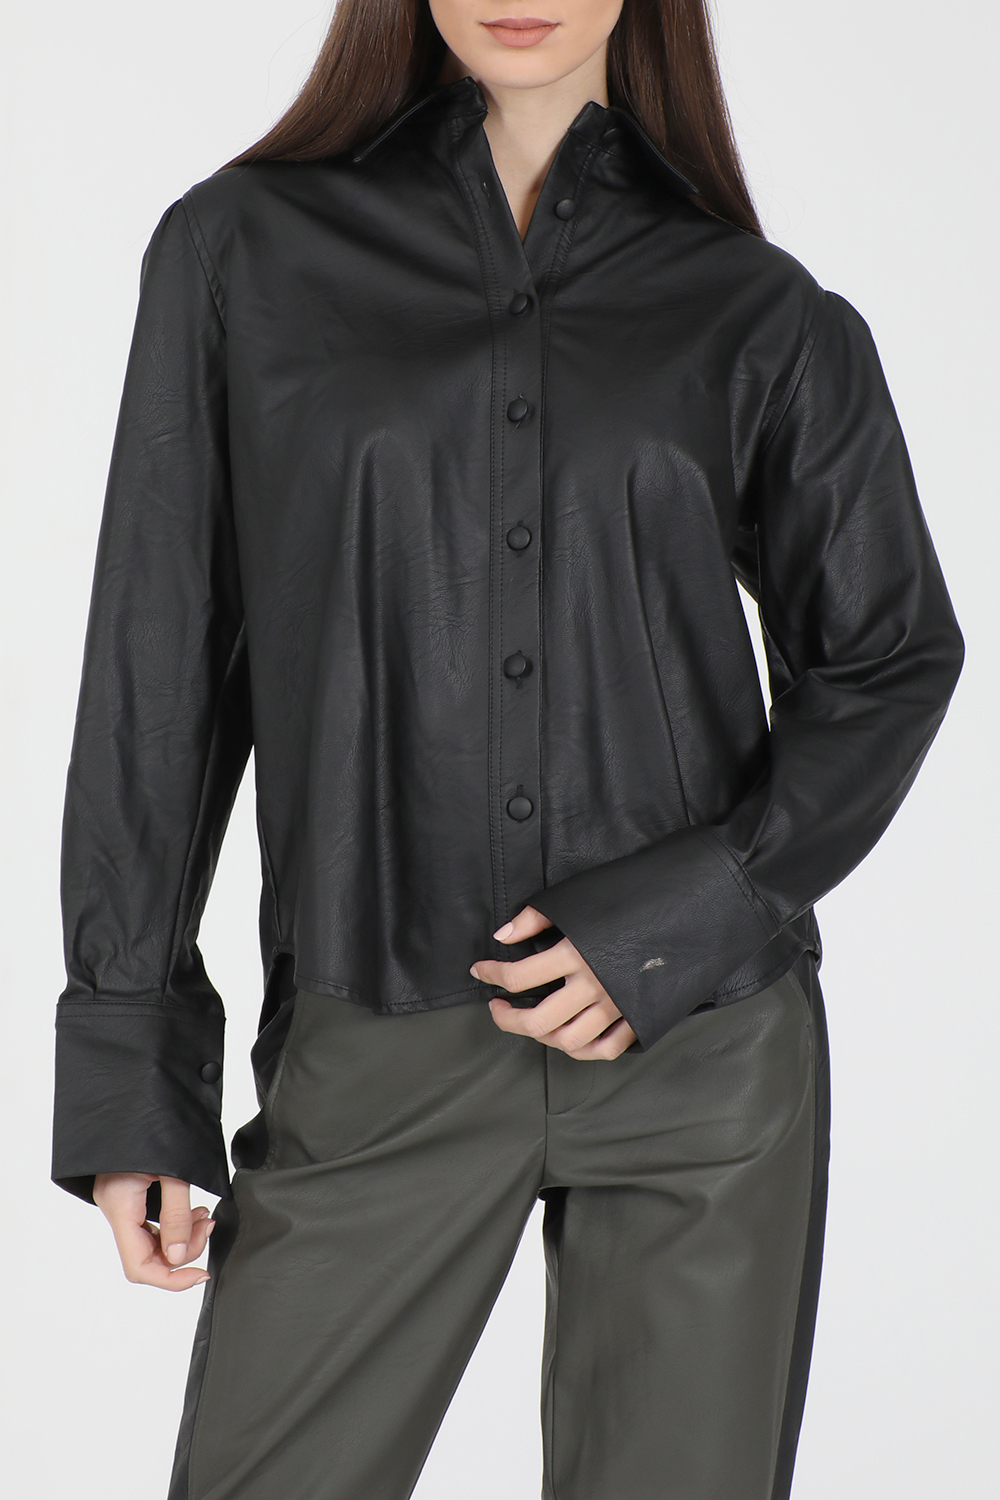 Γυναικεία/Ρούχα/Πουκάμισα/Μακρυμάνικα LA DOLLS - Γυναικείο πουκάμισο LA DOLLS MORGA μαύρο